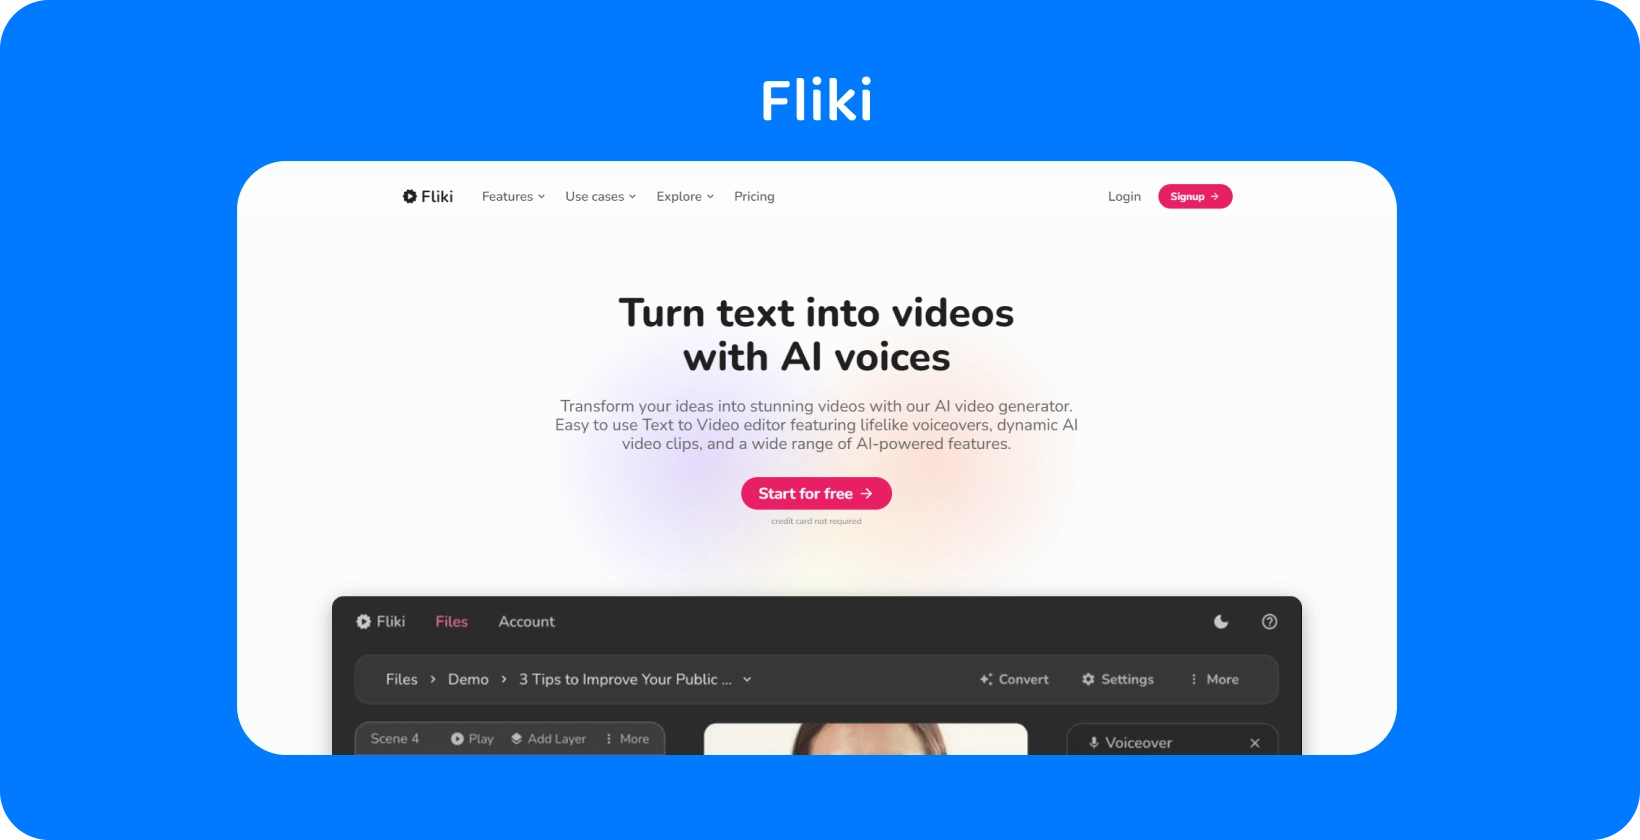 A Fliki platformoldala bemutatja, hogyan lehet a szöveget AI hanggal videóvá alakítani, szöveg-videó szerkesztési élményt kínálva.